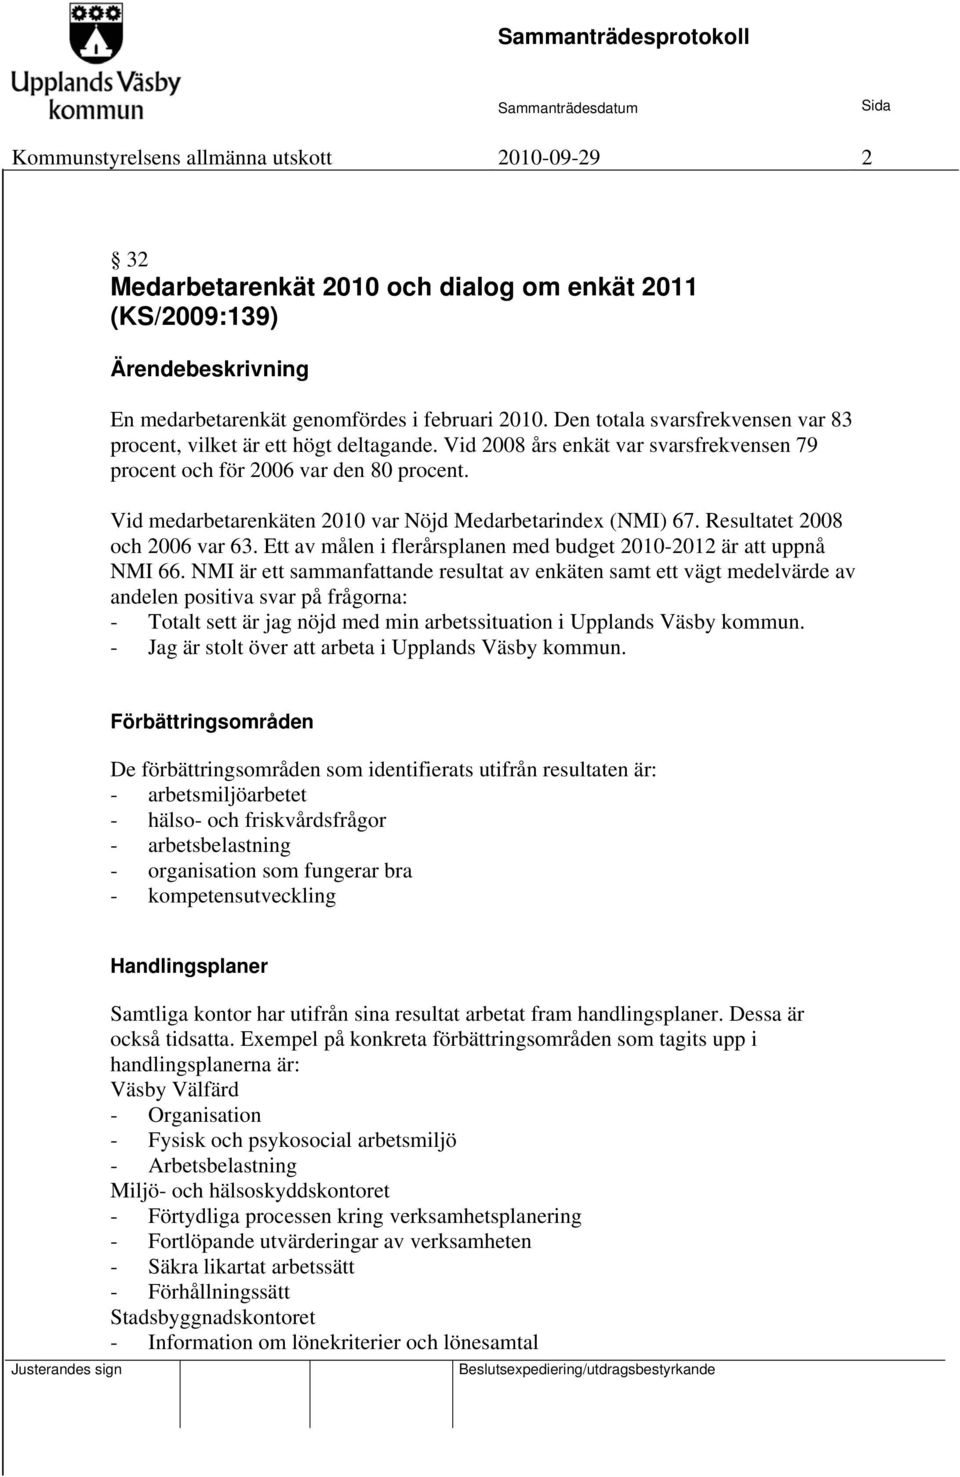 Vid medarbetarenkäten 2010 var Nöjd Medarbetarindex (NMI) 67. Resultatet 2008 och 2006 var 63. Ett av målen i flerårsplanen med budget 2010-2012 är att uppnå NMI 66.